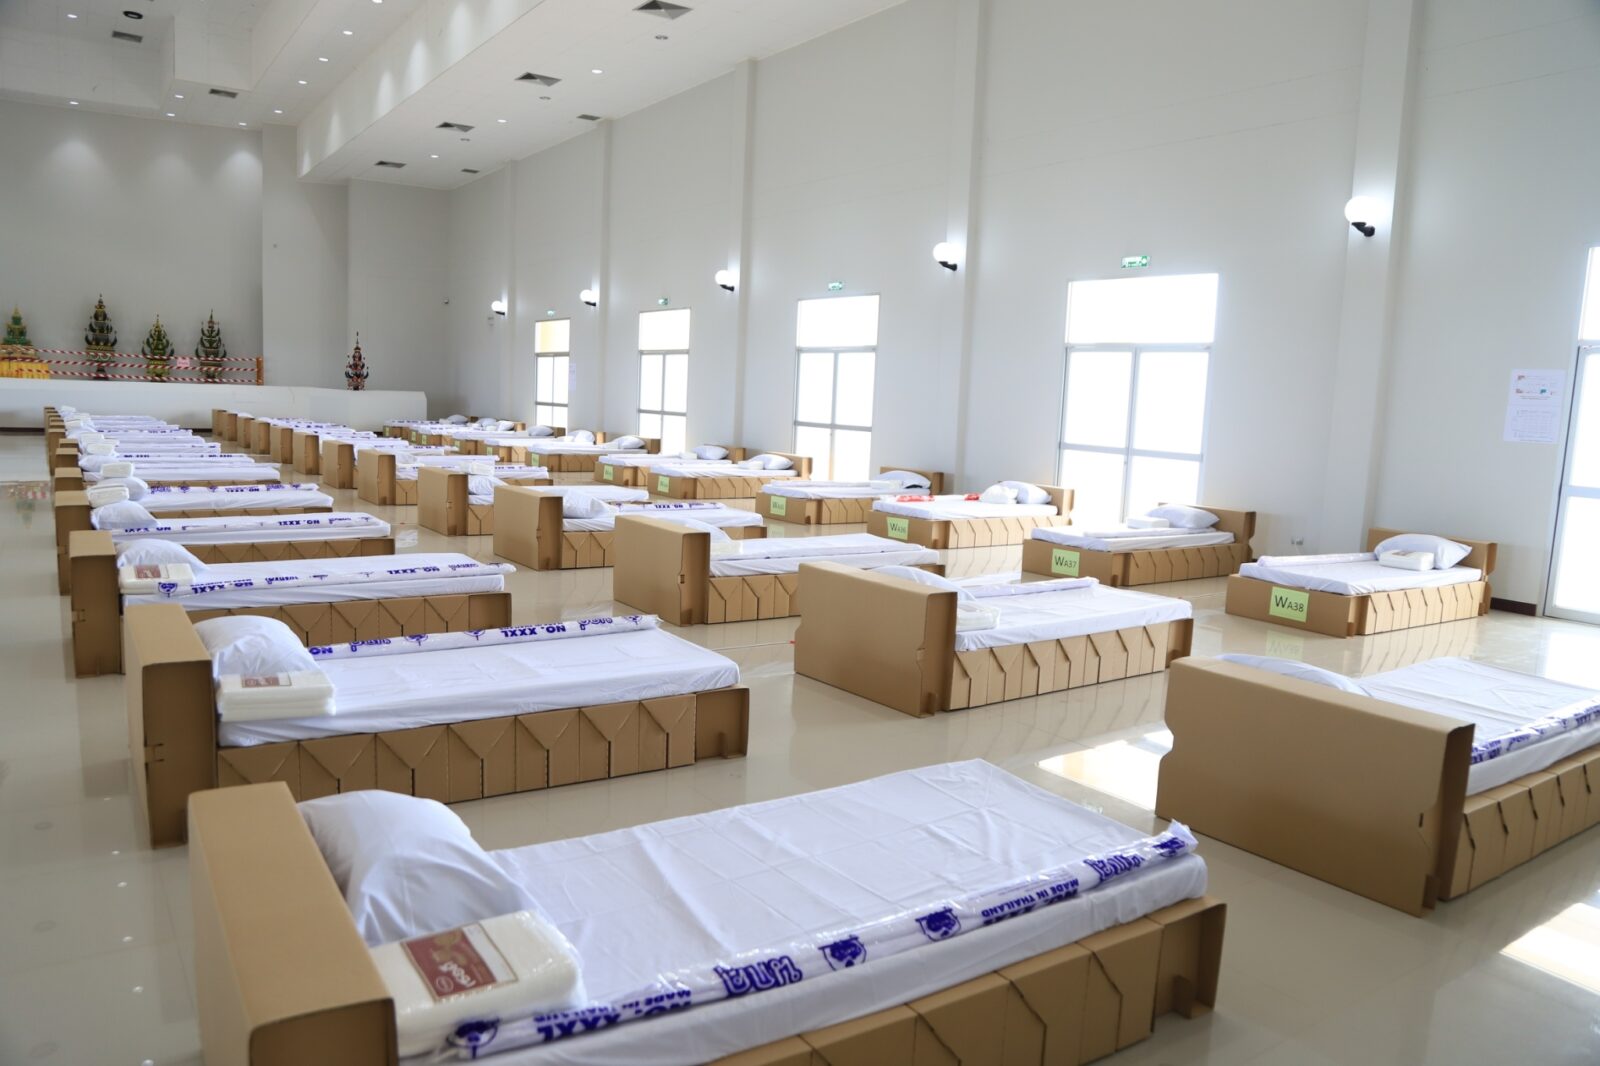 ชูไอเดีย “แคร่ไม้ไผ่” ทำเตียงผู้ป่วย หนุนรายได้ชุมชน